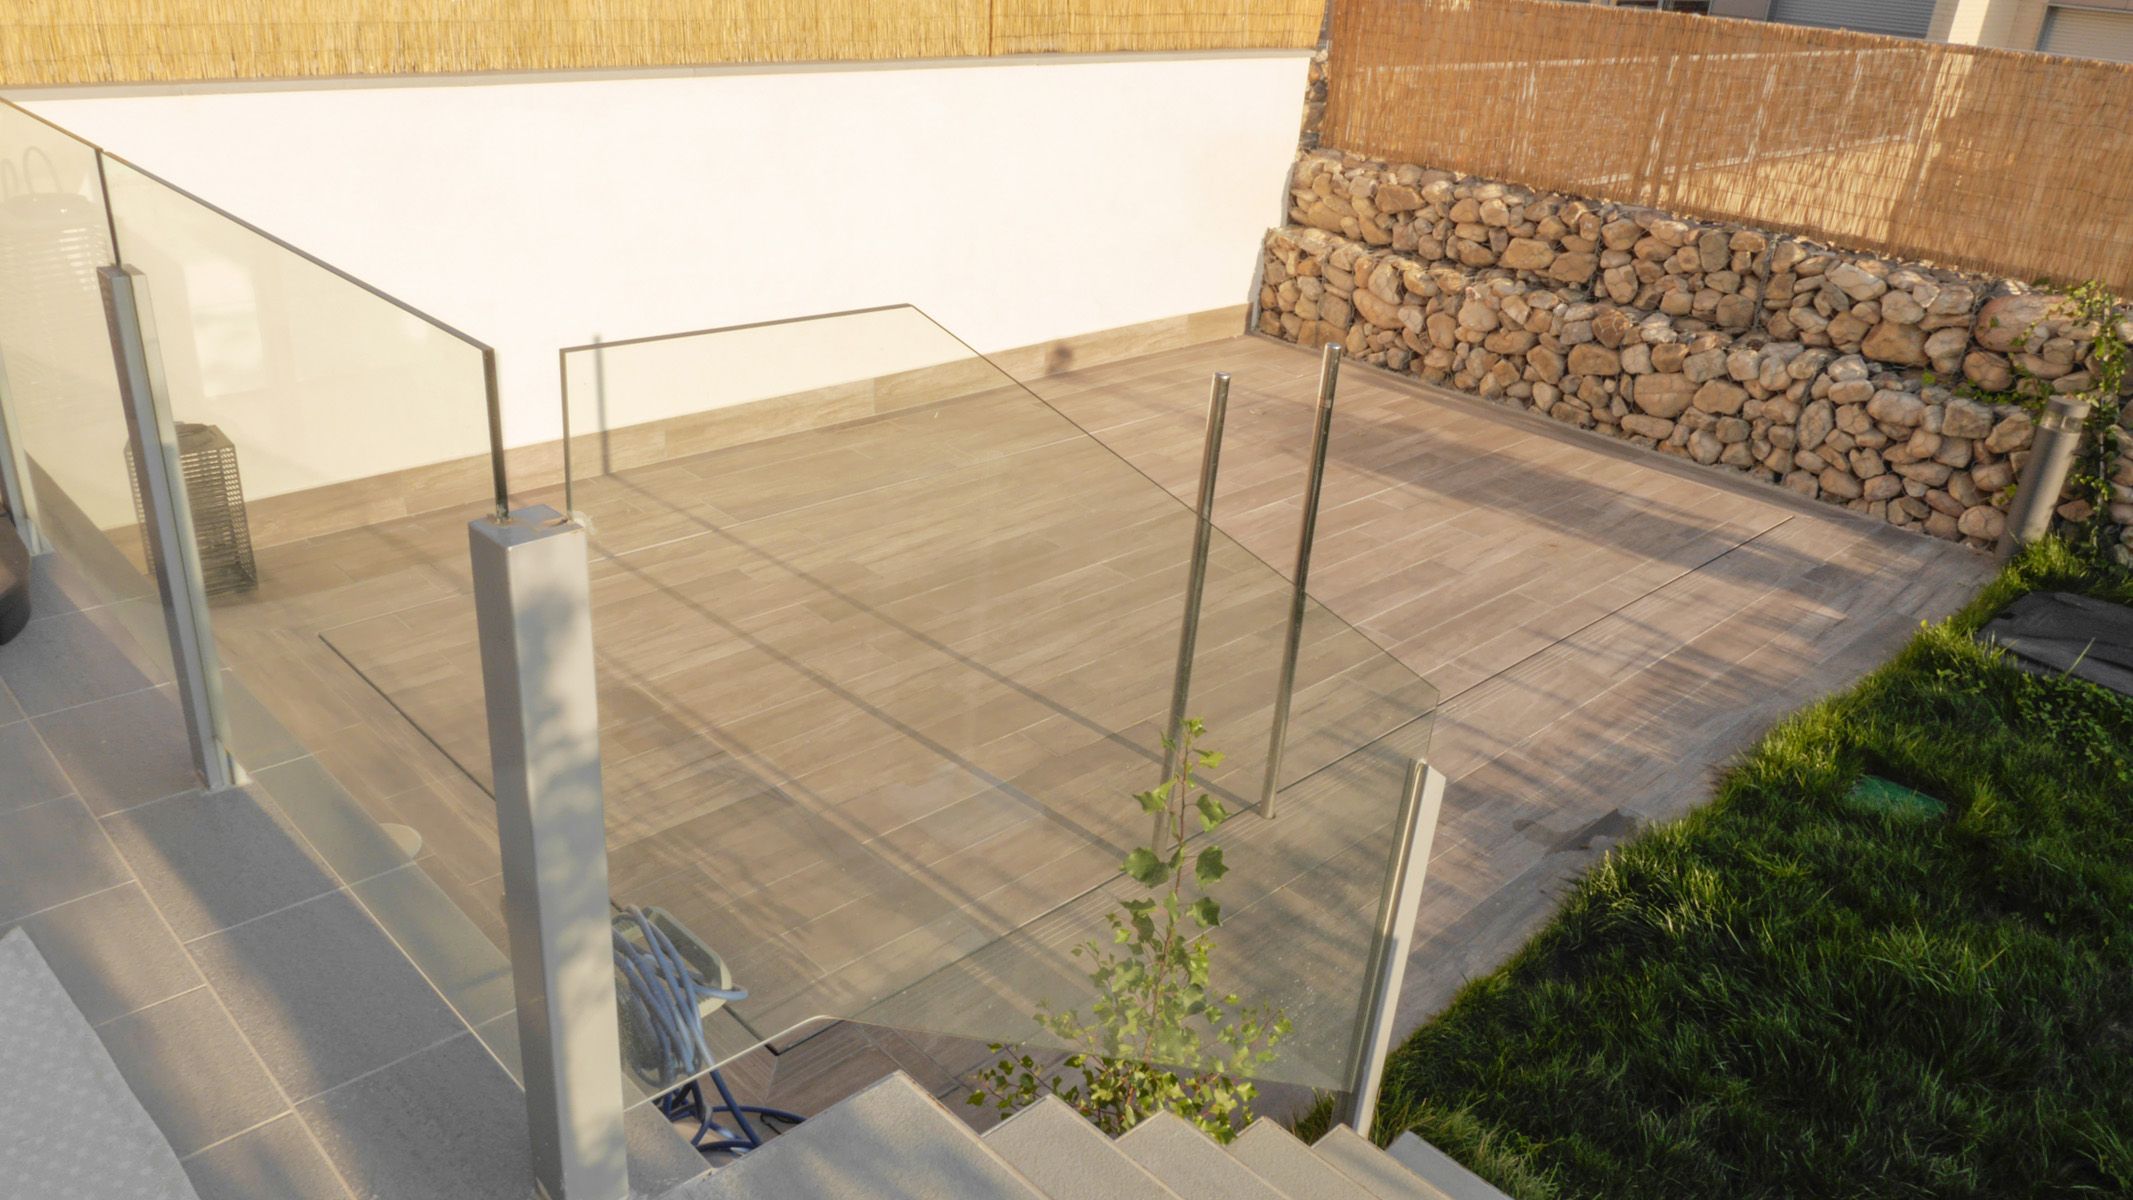 Foto 19 de Instalación de piscinas  en España | Piscinas Castilla - Construcción y Rehabilitación